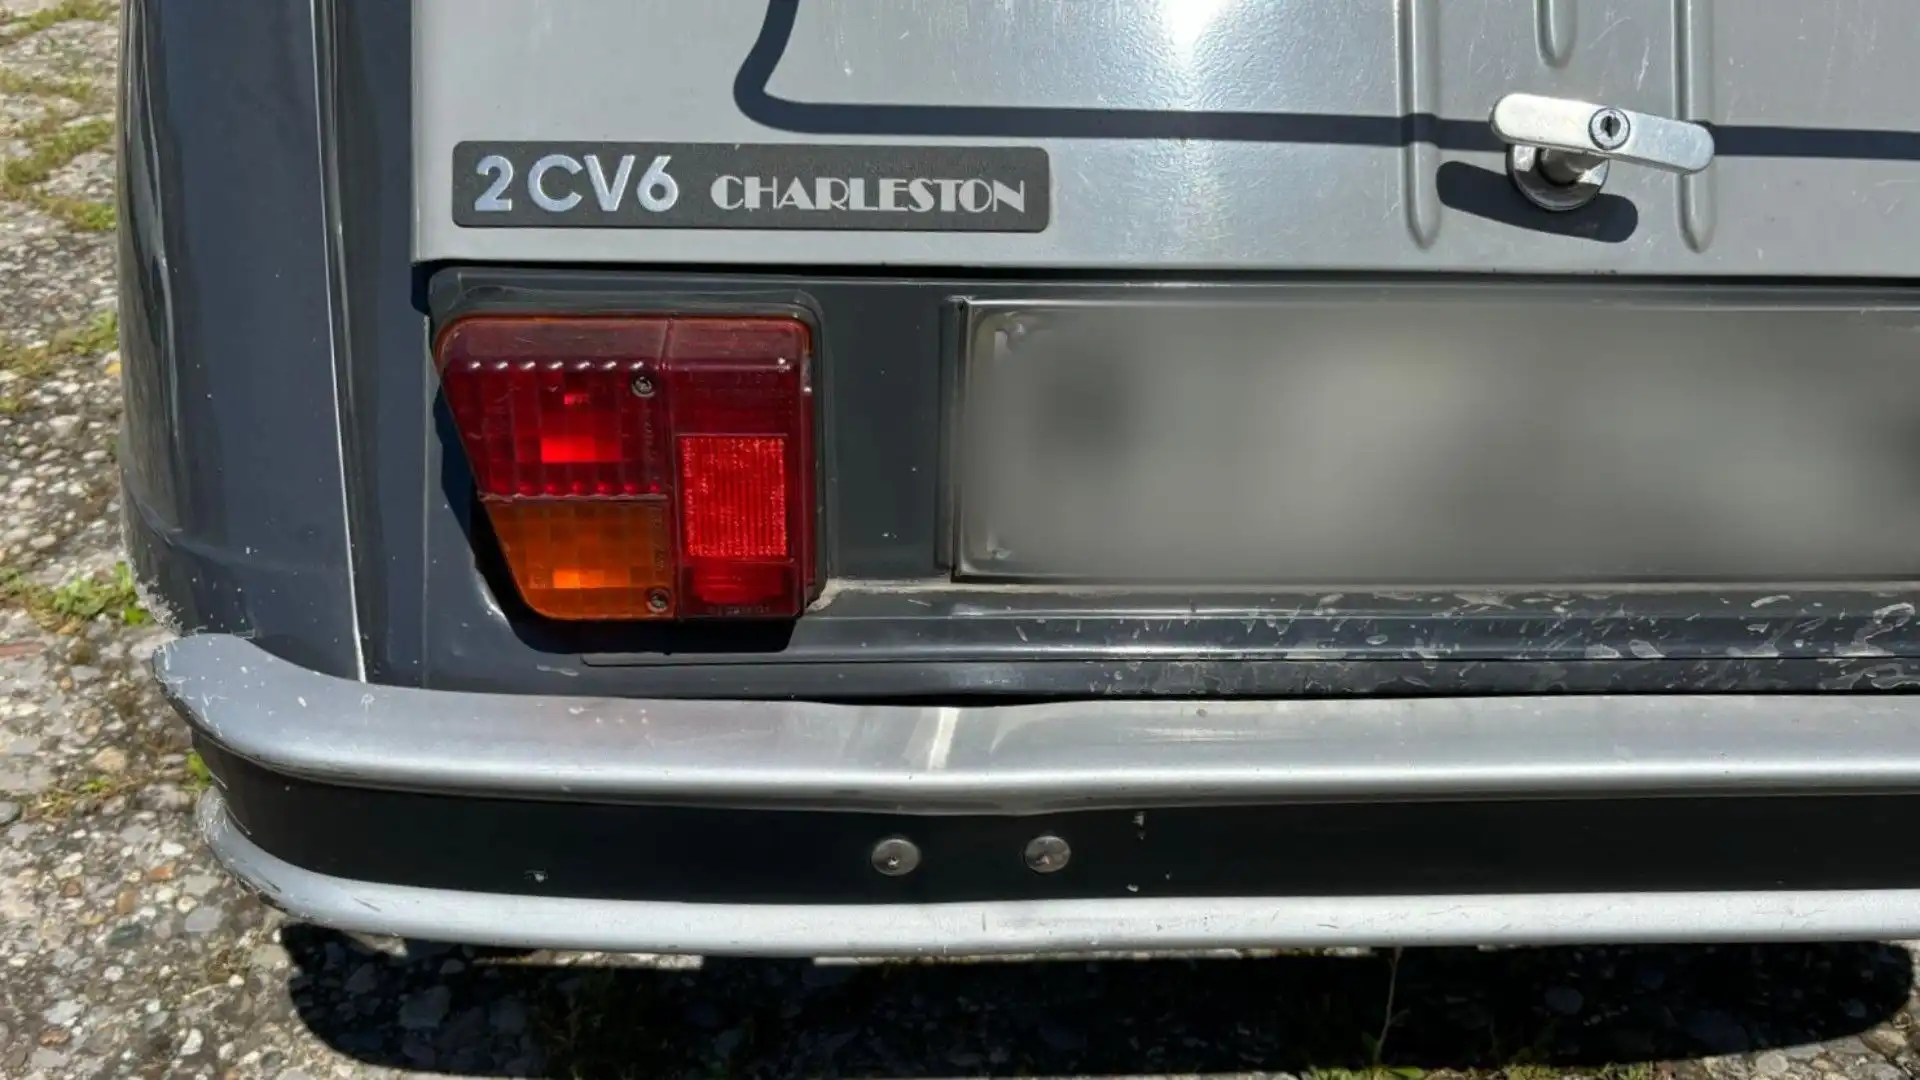 In queste immagini si può ammirare la bellissima Citroën 2CV 6 versione Charleston